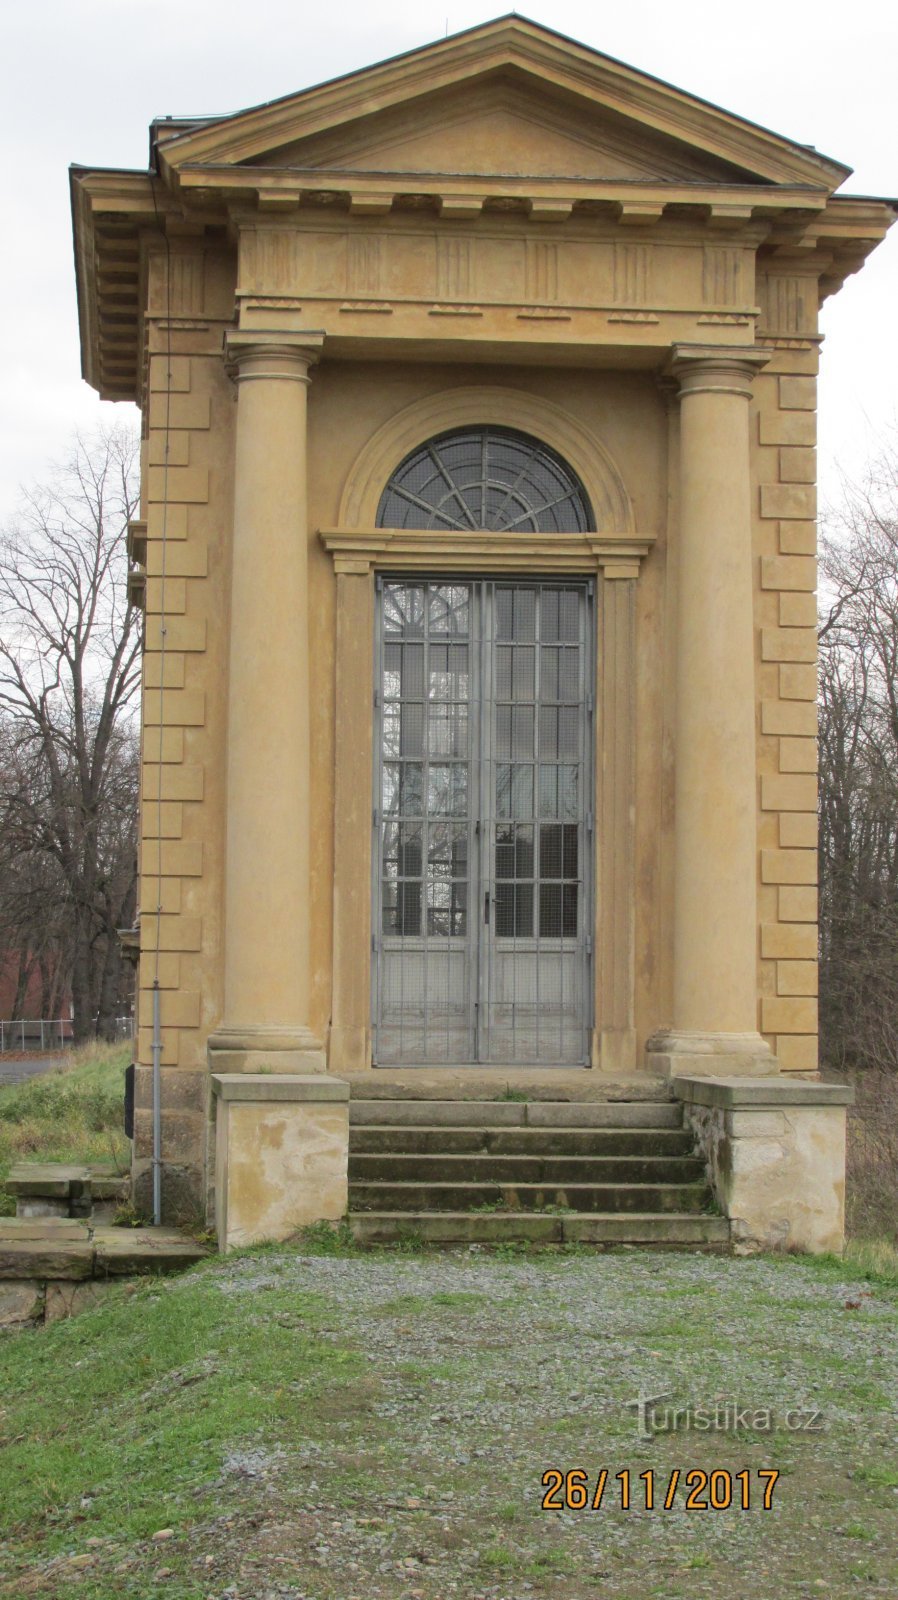 Pavillon de Laudon au château de Veltrusy